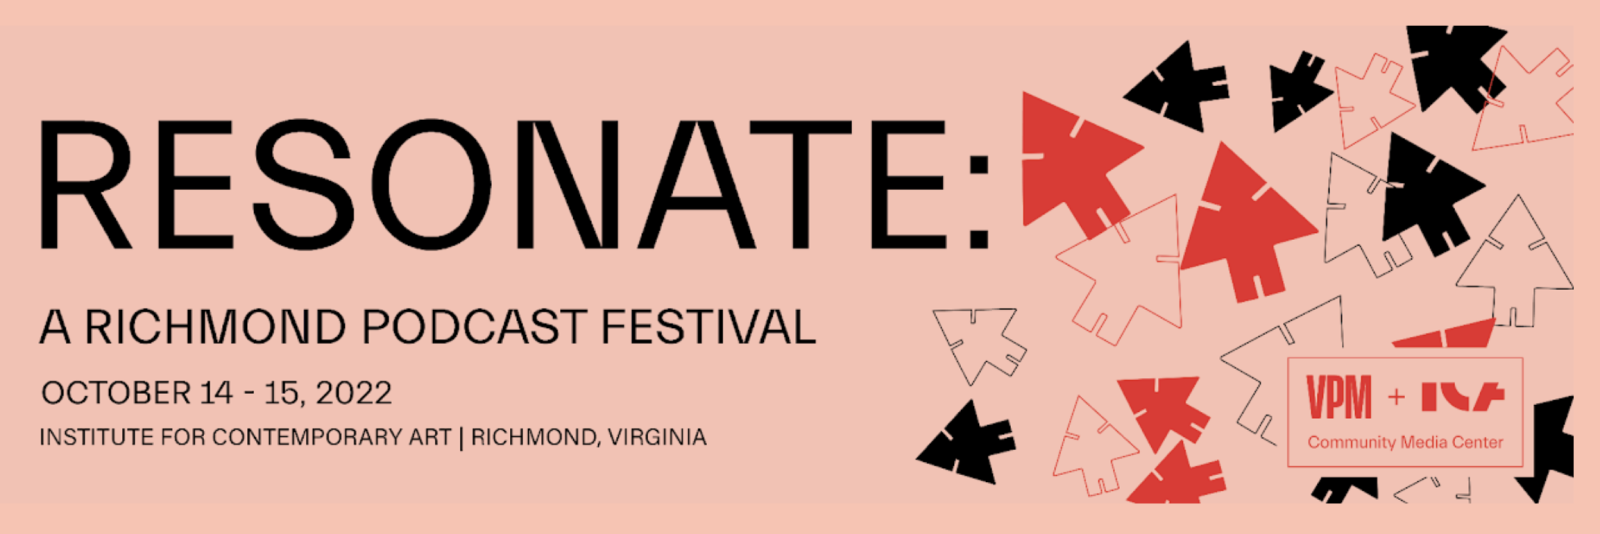 Resonate A podcast festival in richmond virginia